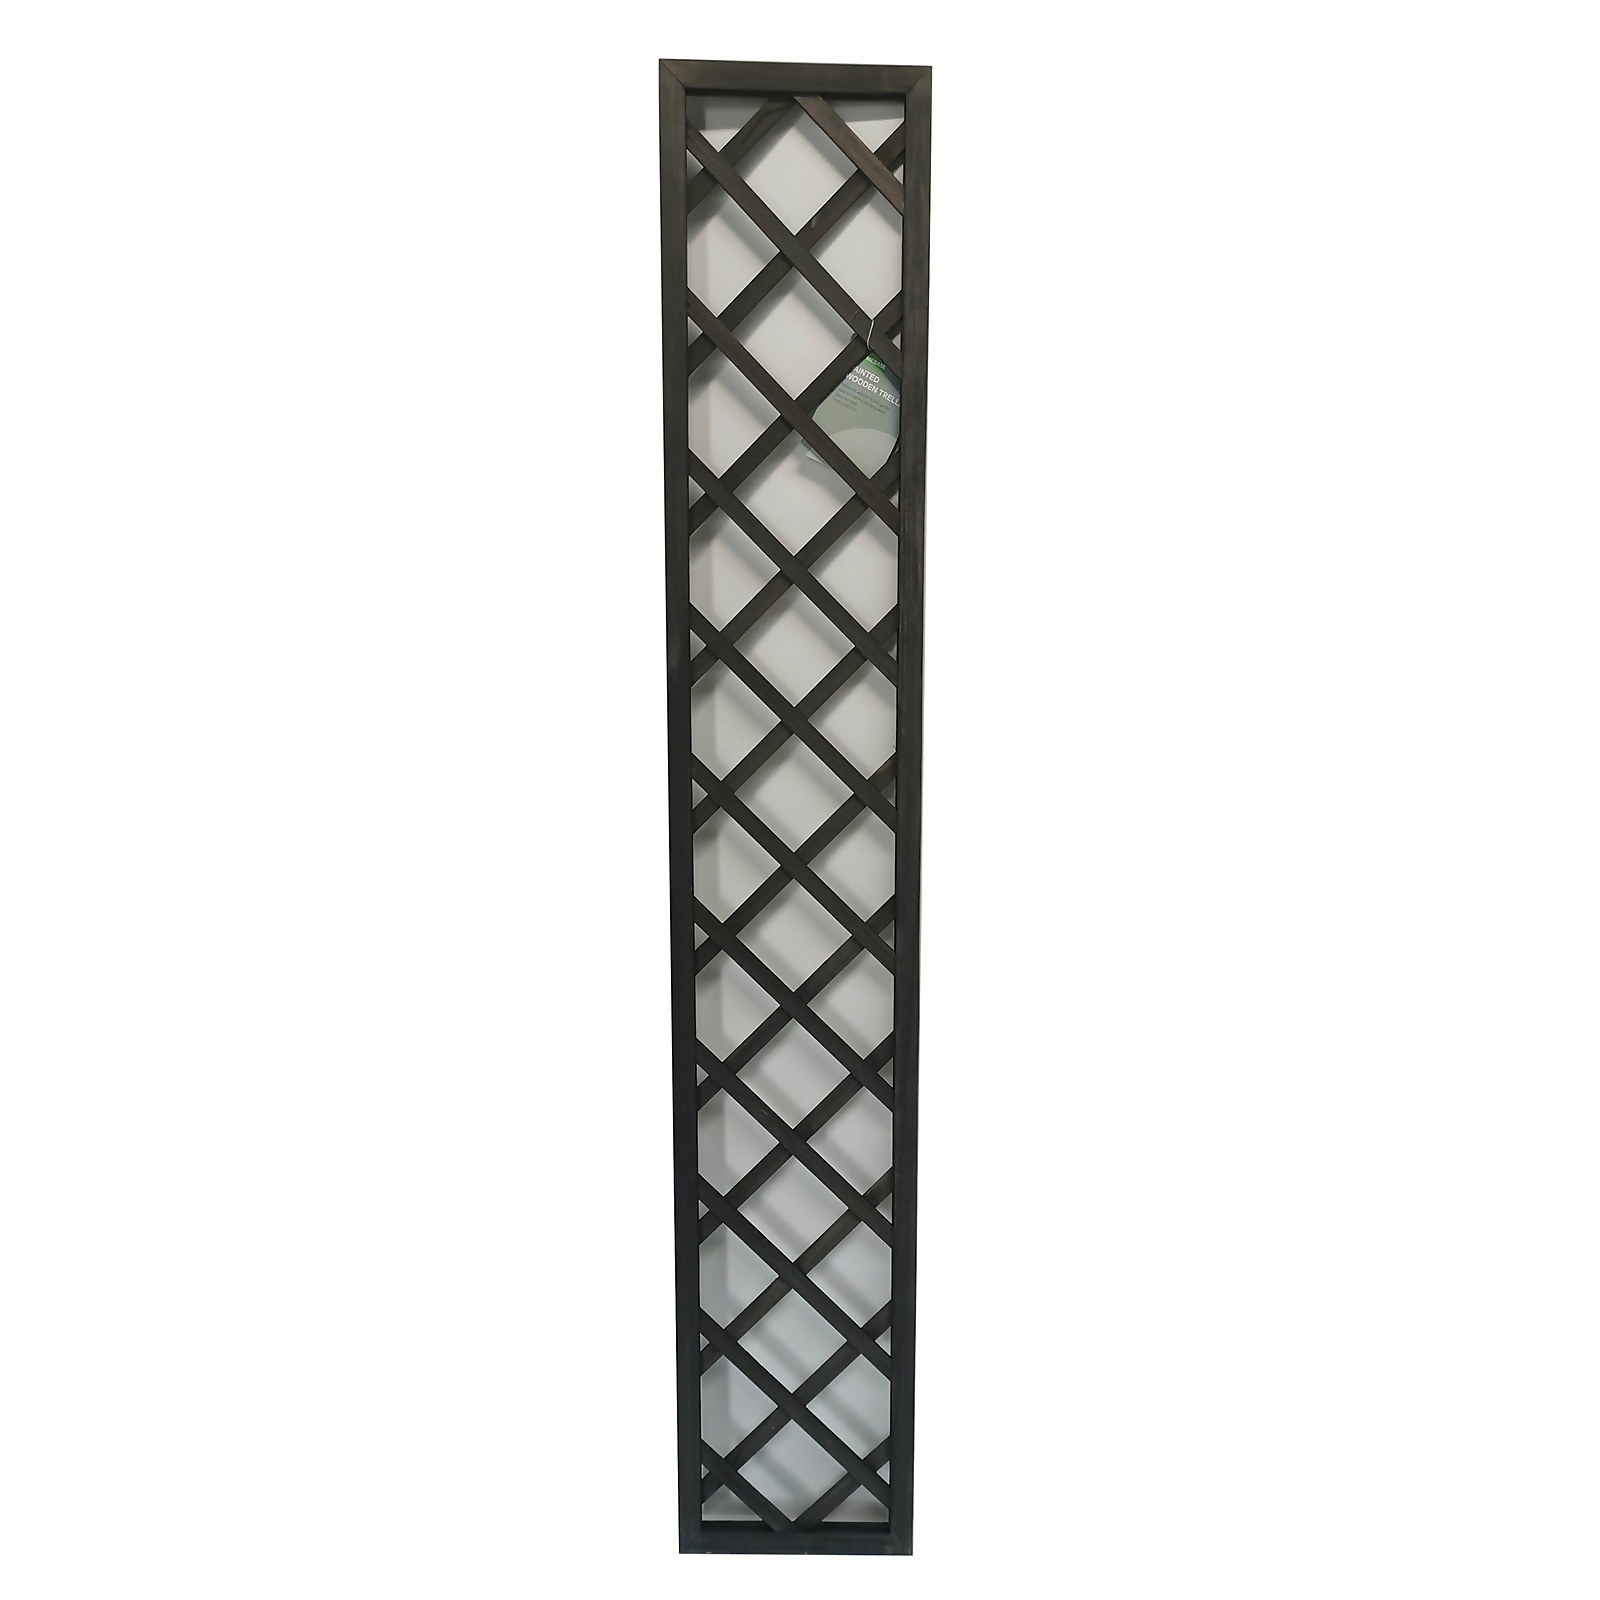 Photo of 1.8m X 30cm Wooden Trellis Panel - Grey